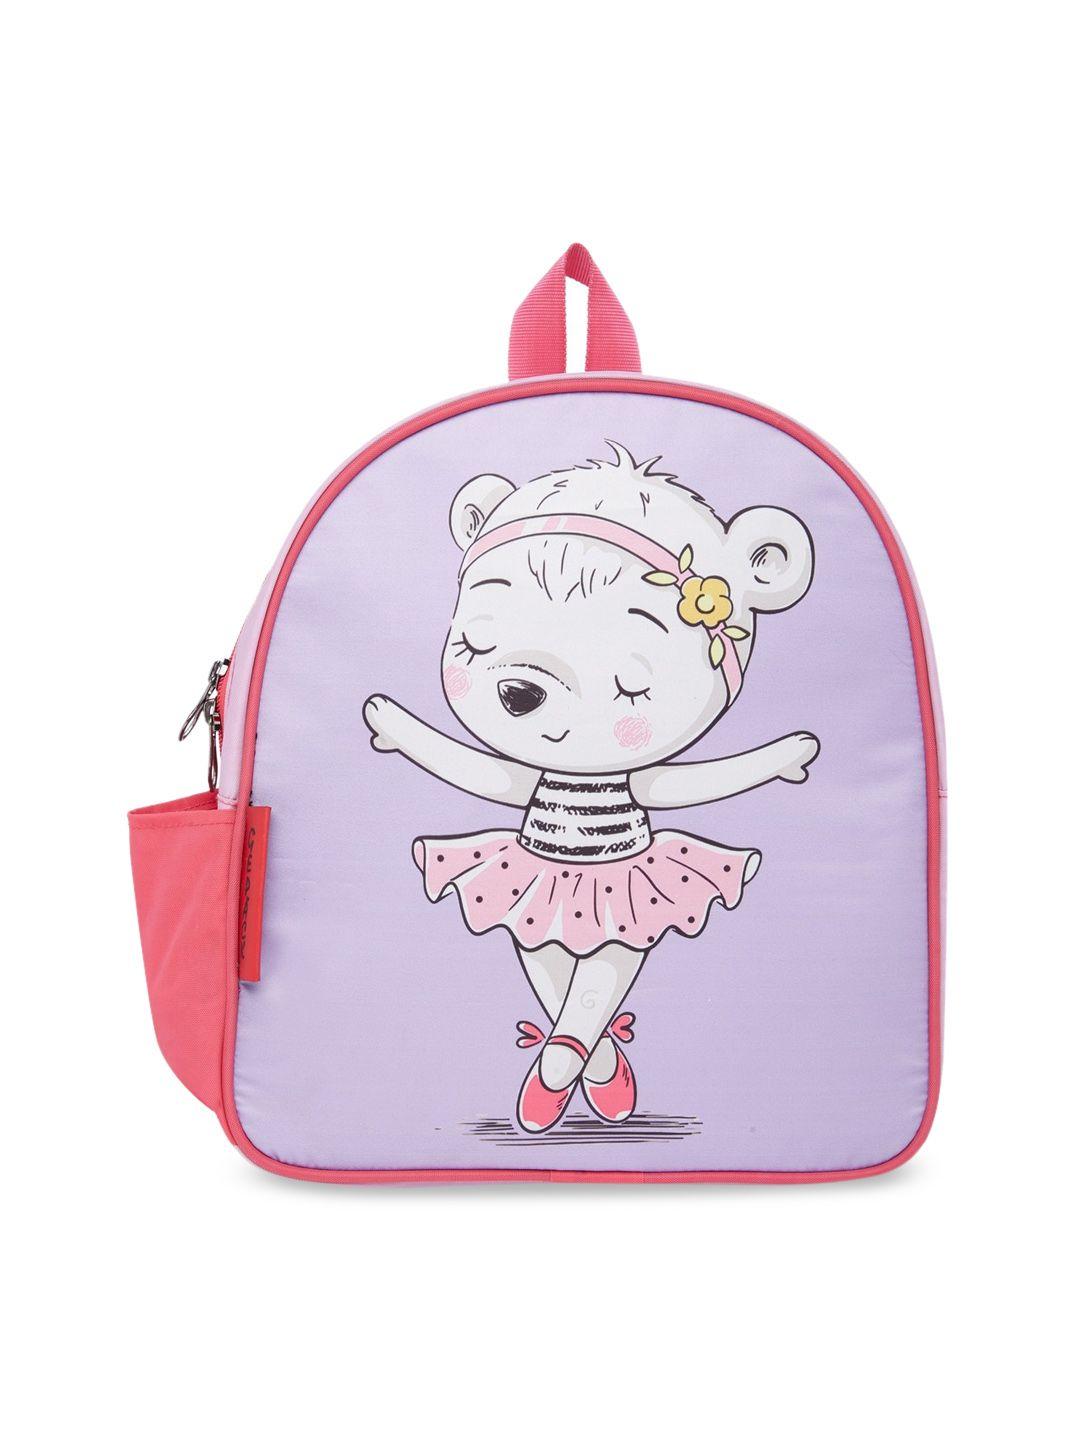 gepack by bagsrus pink 28cm princesss character school backpack bag